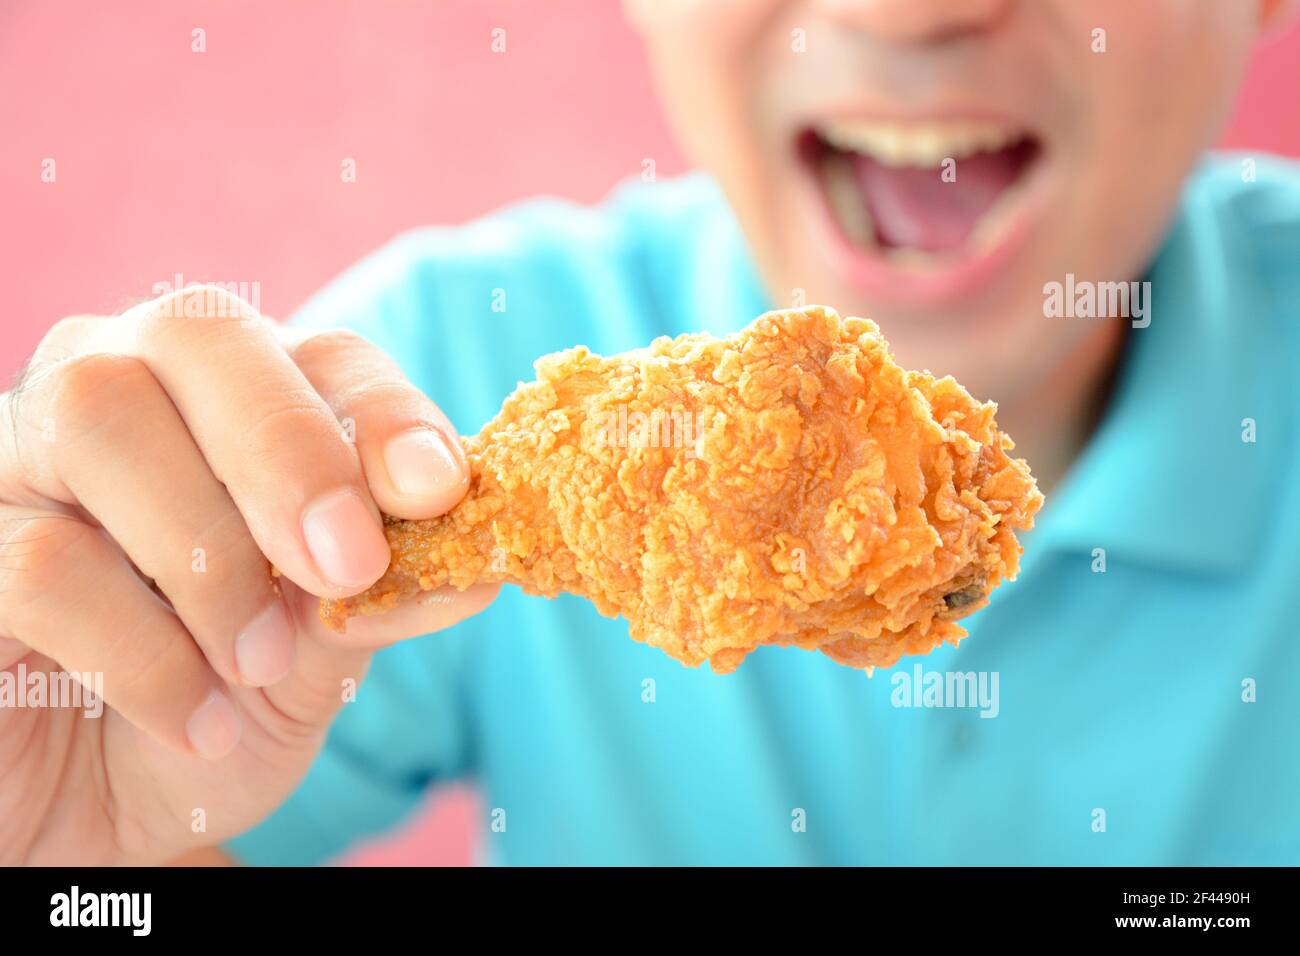 Un homme à la bouche ouverte sur le point de manger frits cuisse de poulet ou pilon Banque D'Images